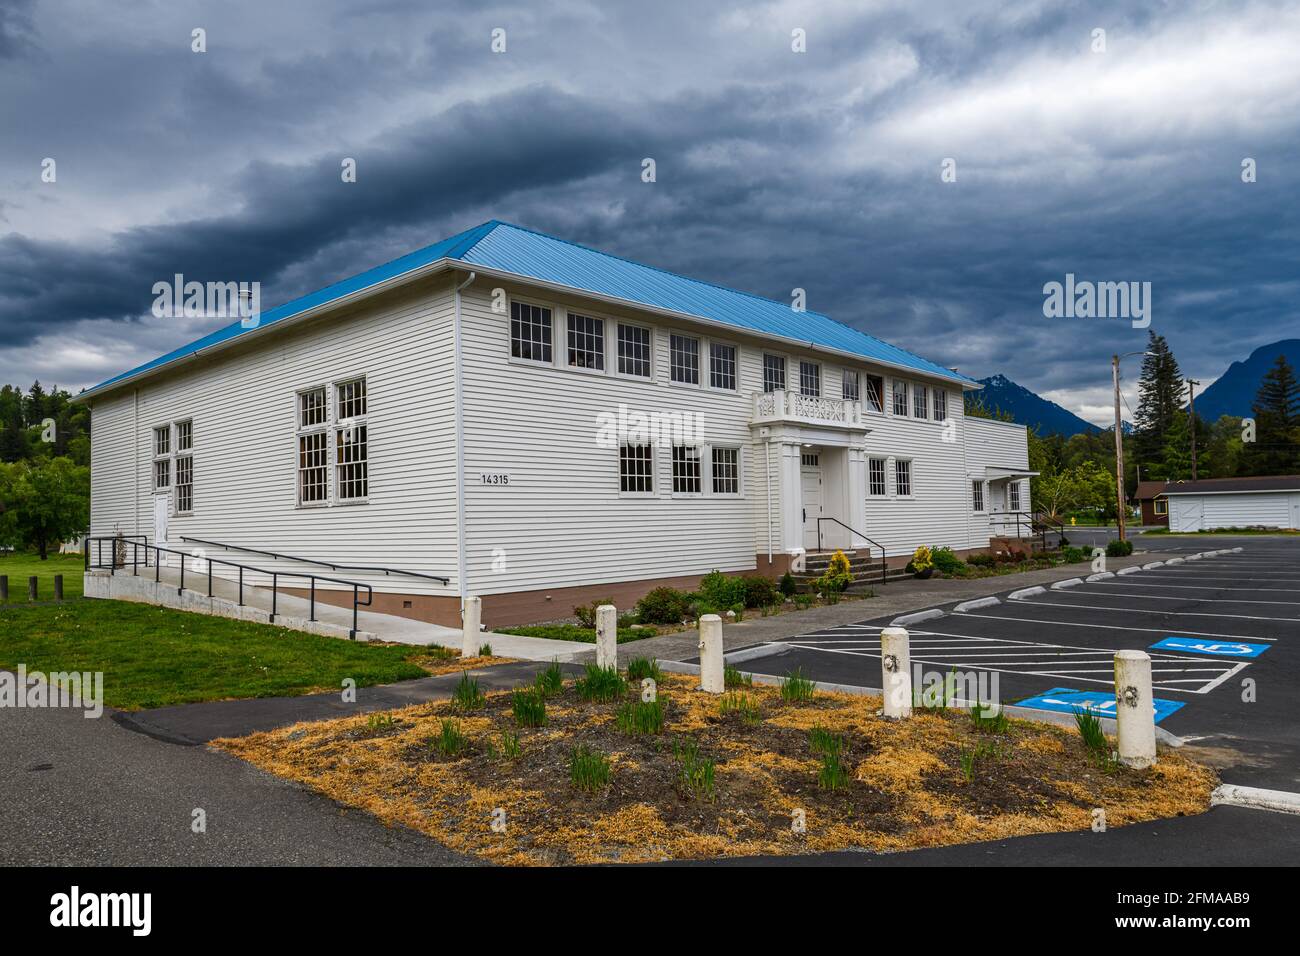 Startup, WA, EE.UU. - 06 de mayo de 2021; el Centro de Eventos Startup en Cascade Foothills cerca de Sultan, con cielos de manantial moody sobre el edificio restaurado. Foto de stock